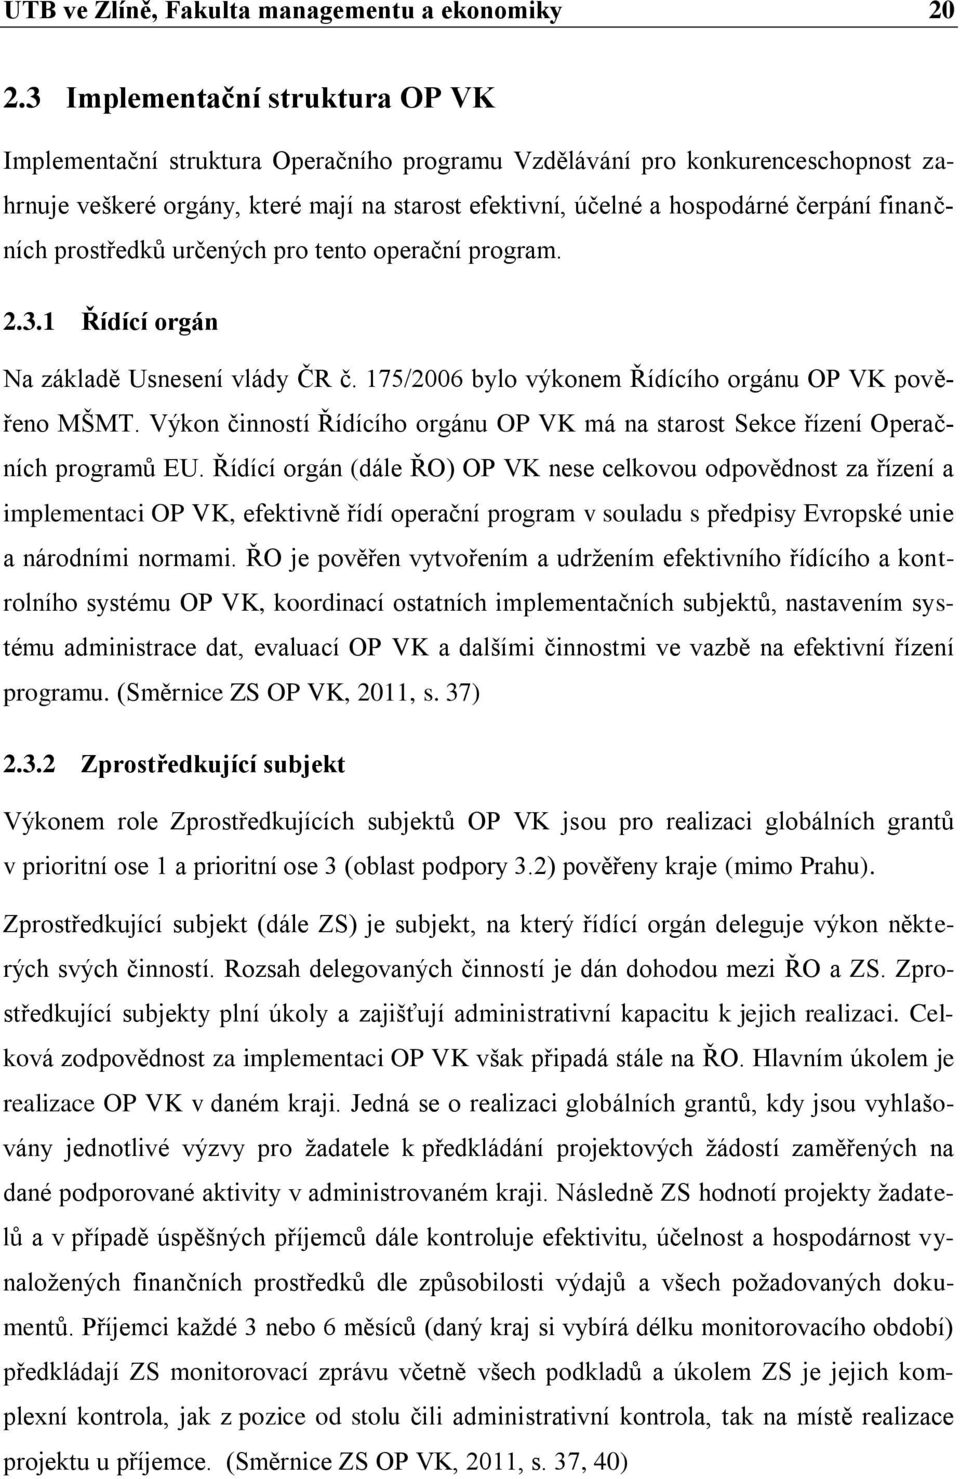 finančních prostředků určených pro tento operační program. 2.3.1 Řídící orgán Na základě Usnesení vlády ČR č. 175/2006 bylo výkonem Řídícího orgánu OP VK pověřeno MŠMT.